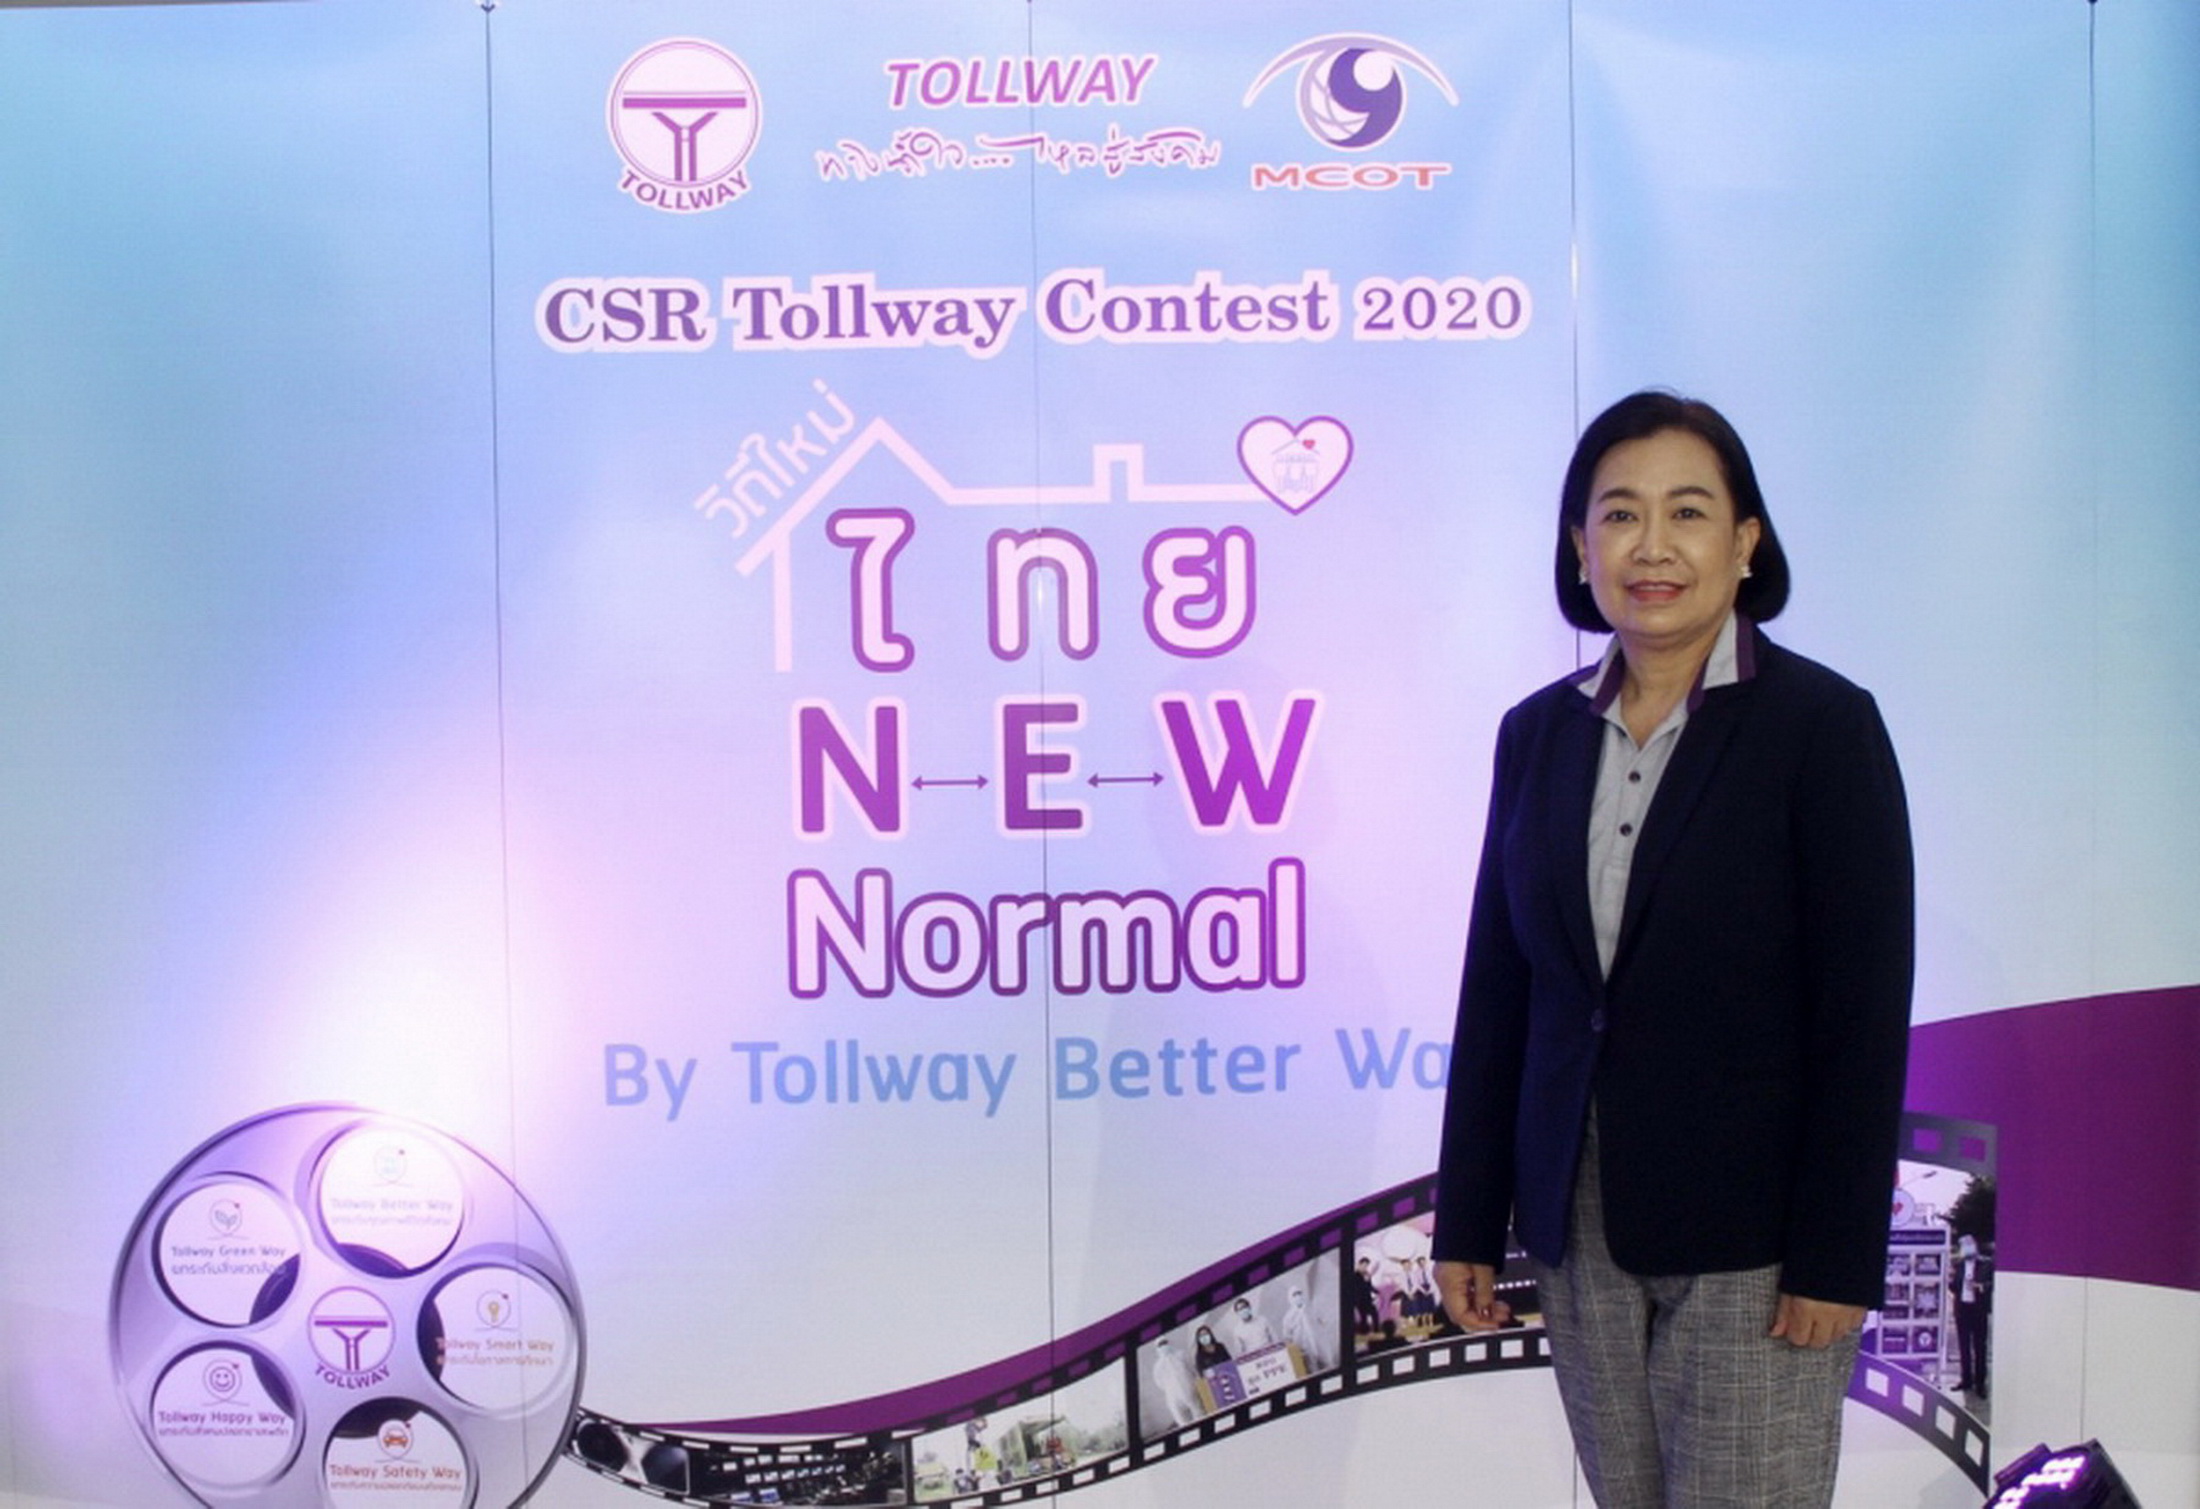 อย่ารอช้า!! ส่งผลงานเข้าประกวด CSR Tollway Contest 2020 ได้ถึง 30 ก.ย.63